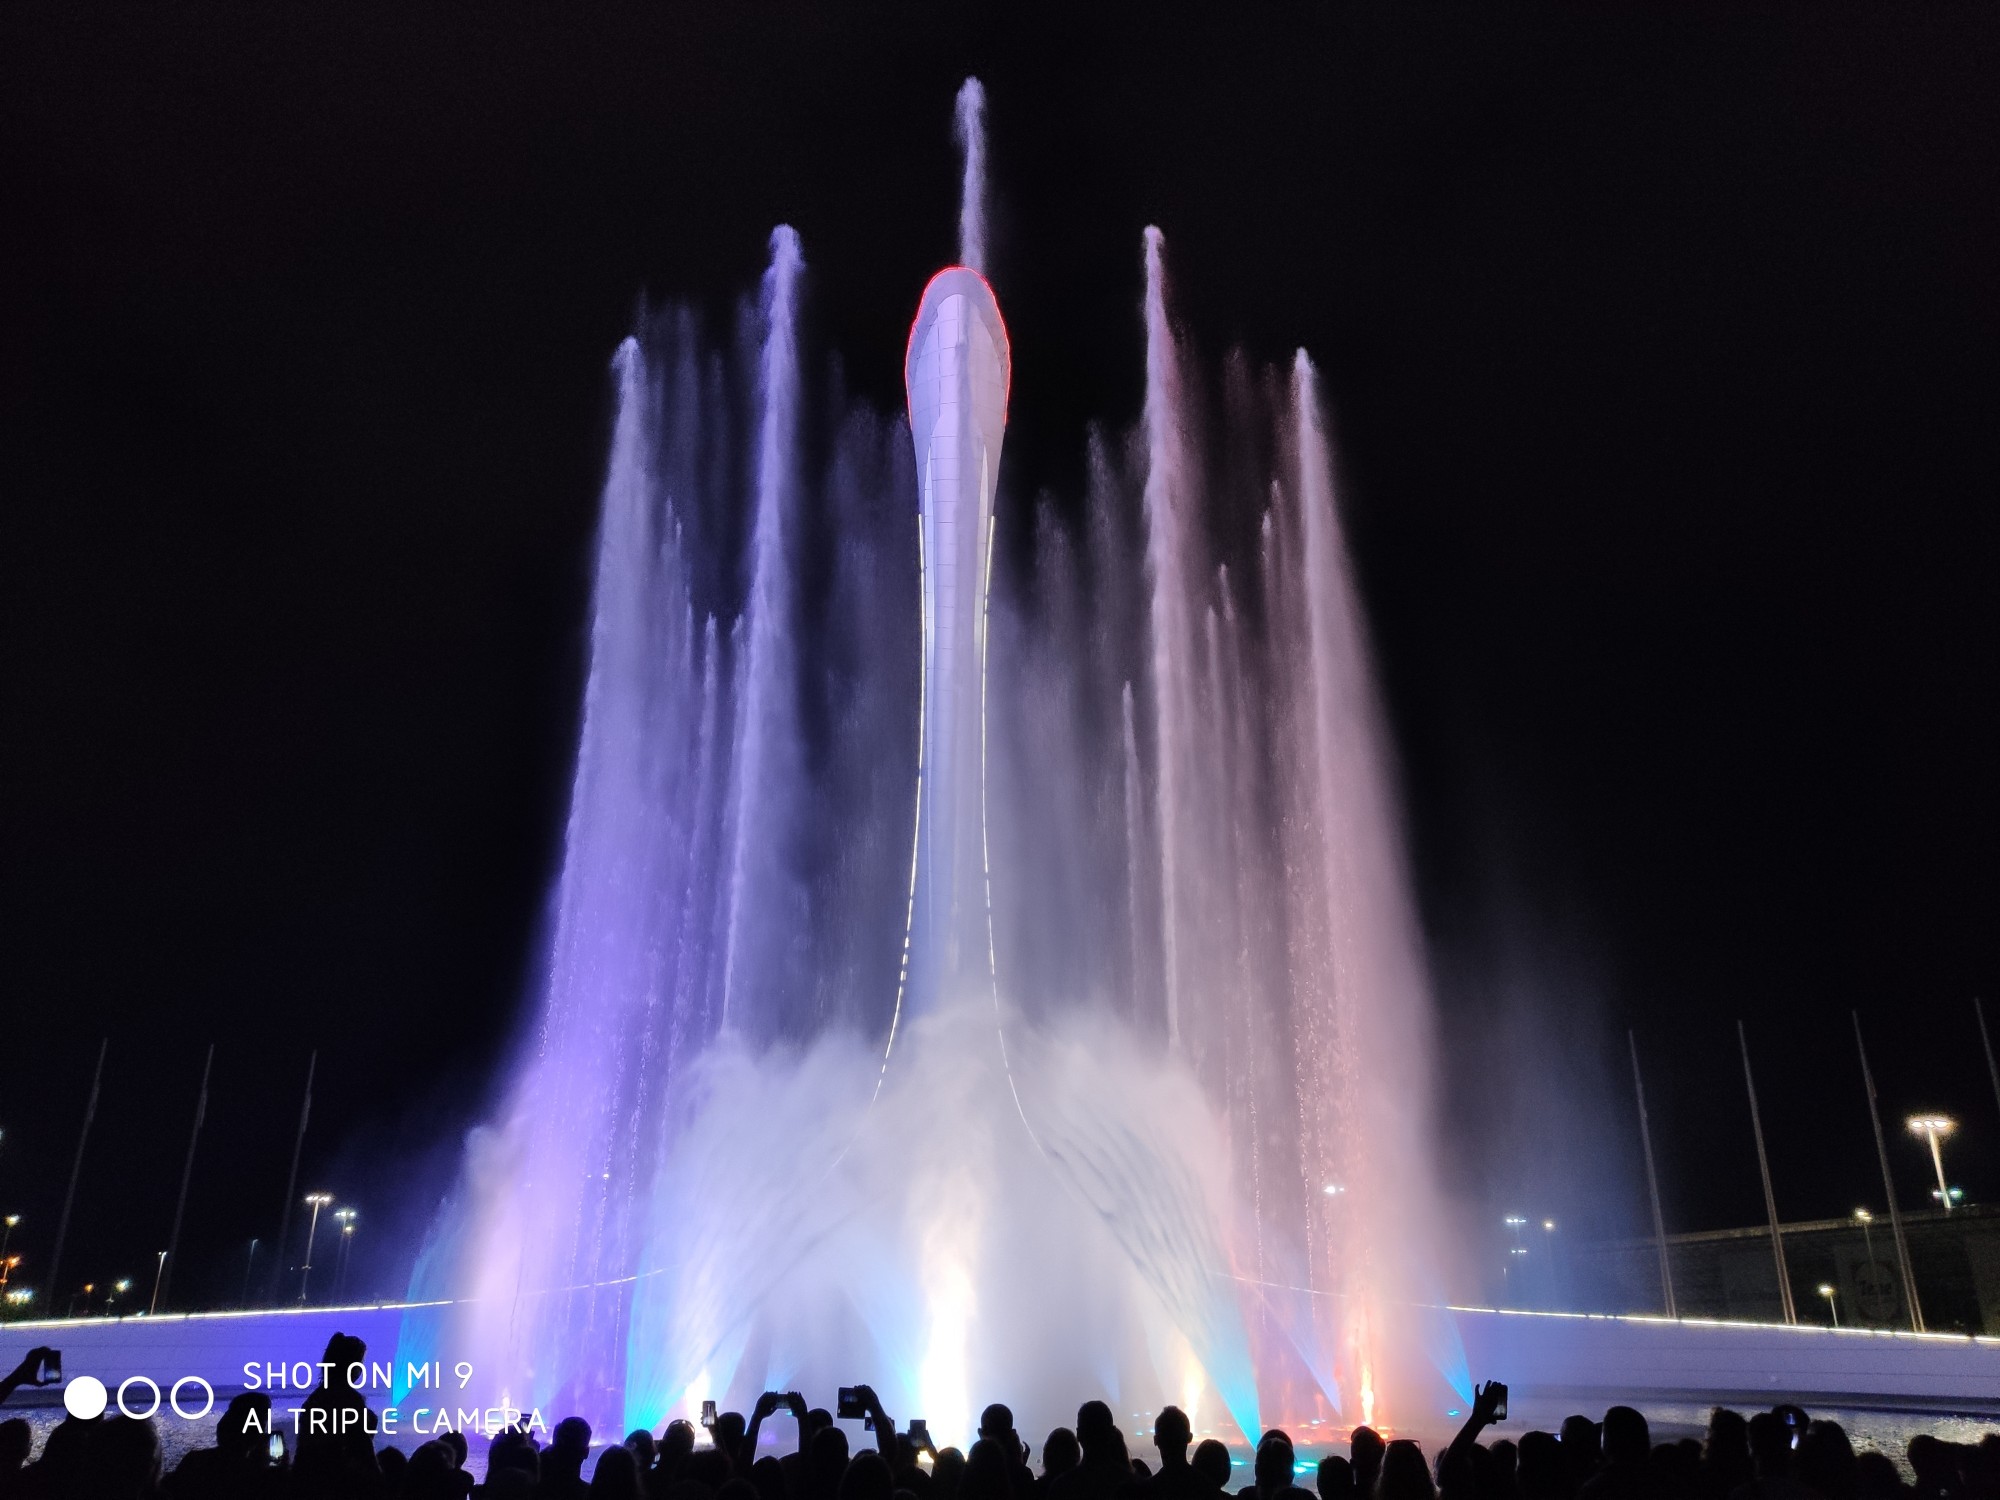 Олимпийский парк работа поющих фонтанов. Сочи парк фонтан. Олимпийский парк шоу фонтанов. Поющие фонтаны Сочи Олимпийский парк. Поющий фонтан в Сочи в Олимпийском парке.